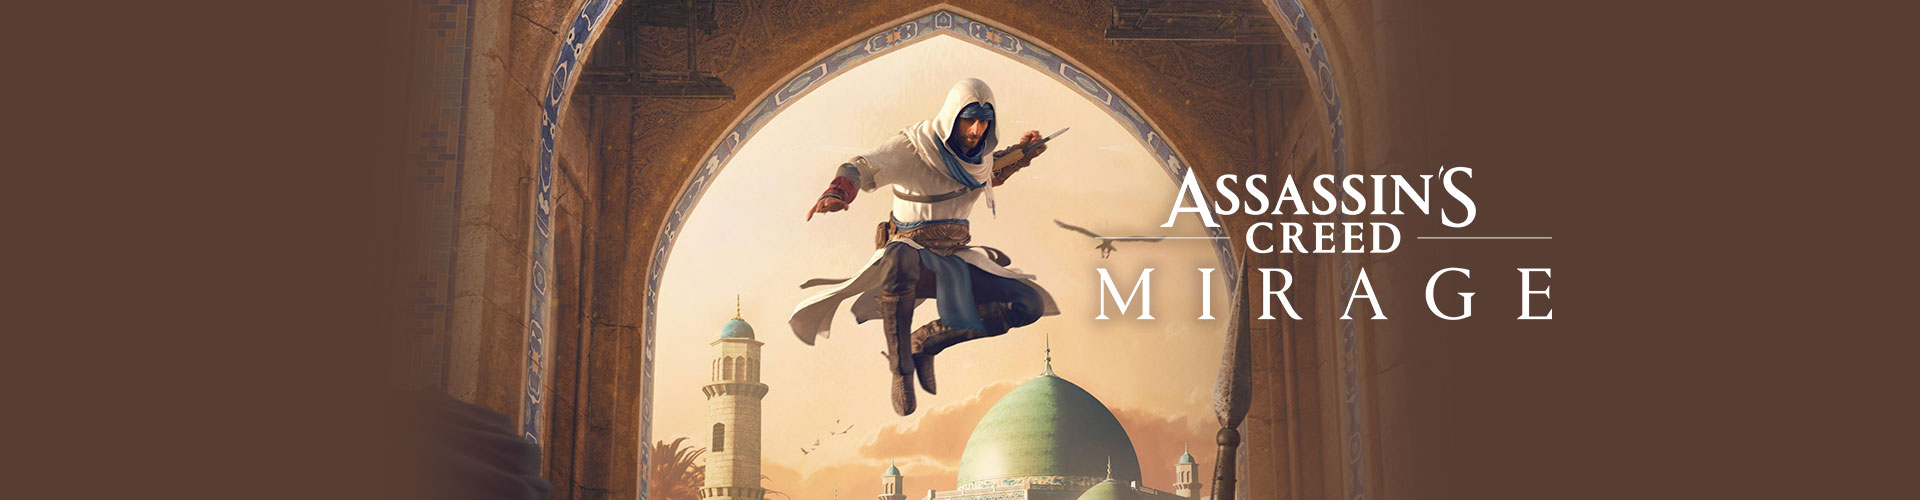 Configuration PC minimale, recommandée et 4K pour jouer à Assassin's Creed Mirage